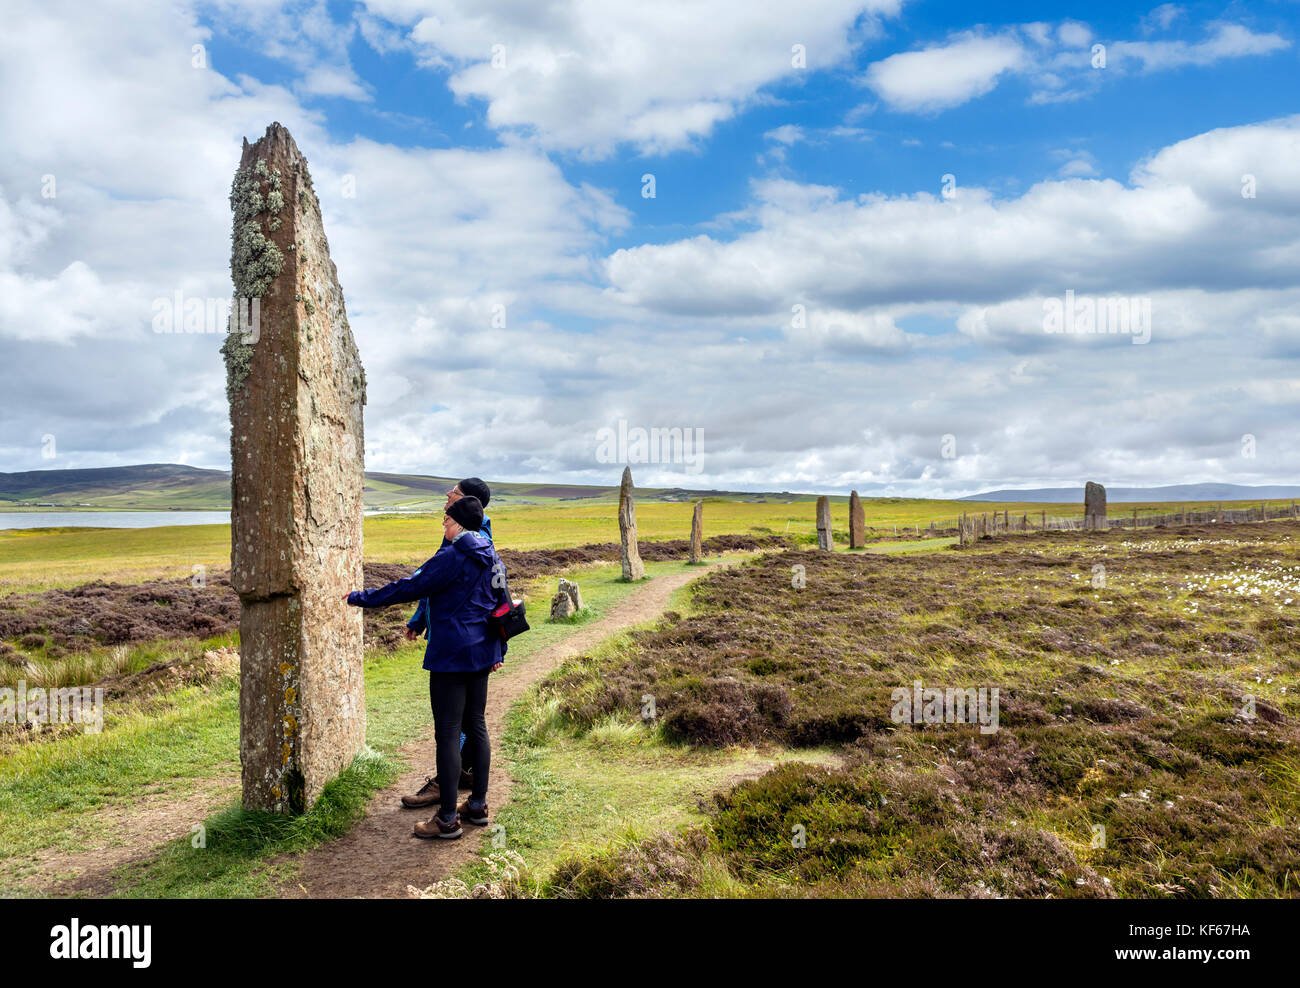 Les touristes à l'anneau de Shetlands, Orkney. Cercle de pierres néolithiques, datant d'environ 2000 à 2500 avant J.-C., Mainland, Orcades, îles Orcades, Ecosse, Royaume-Uni Banque D'Images